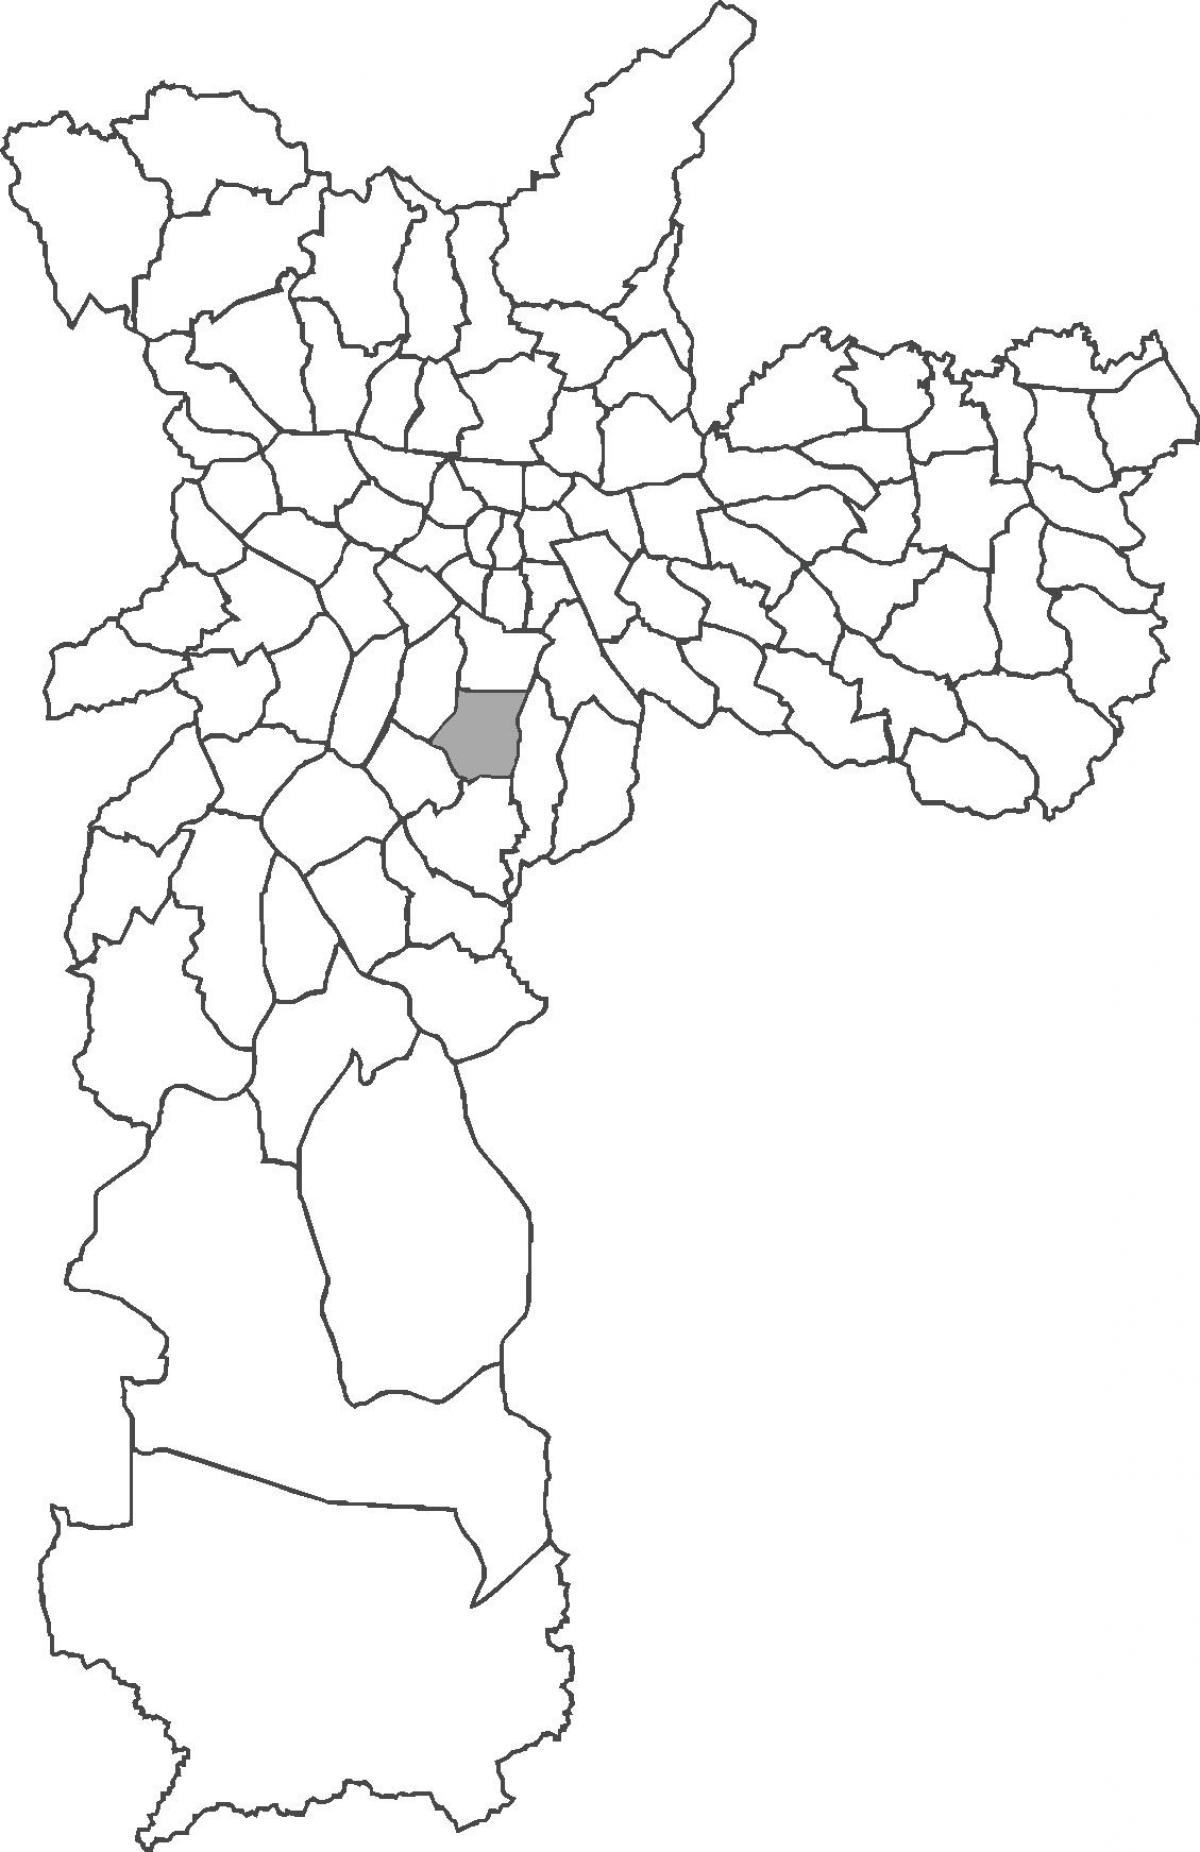 નકશો Saúde જિલ્લા